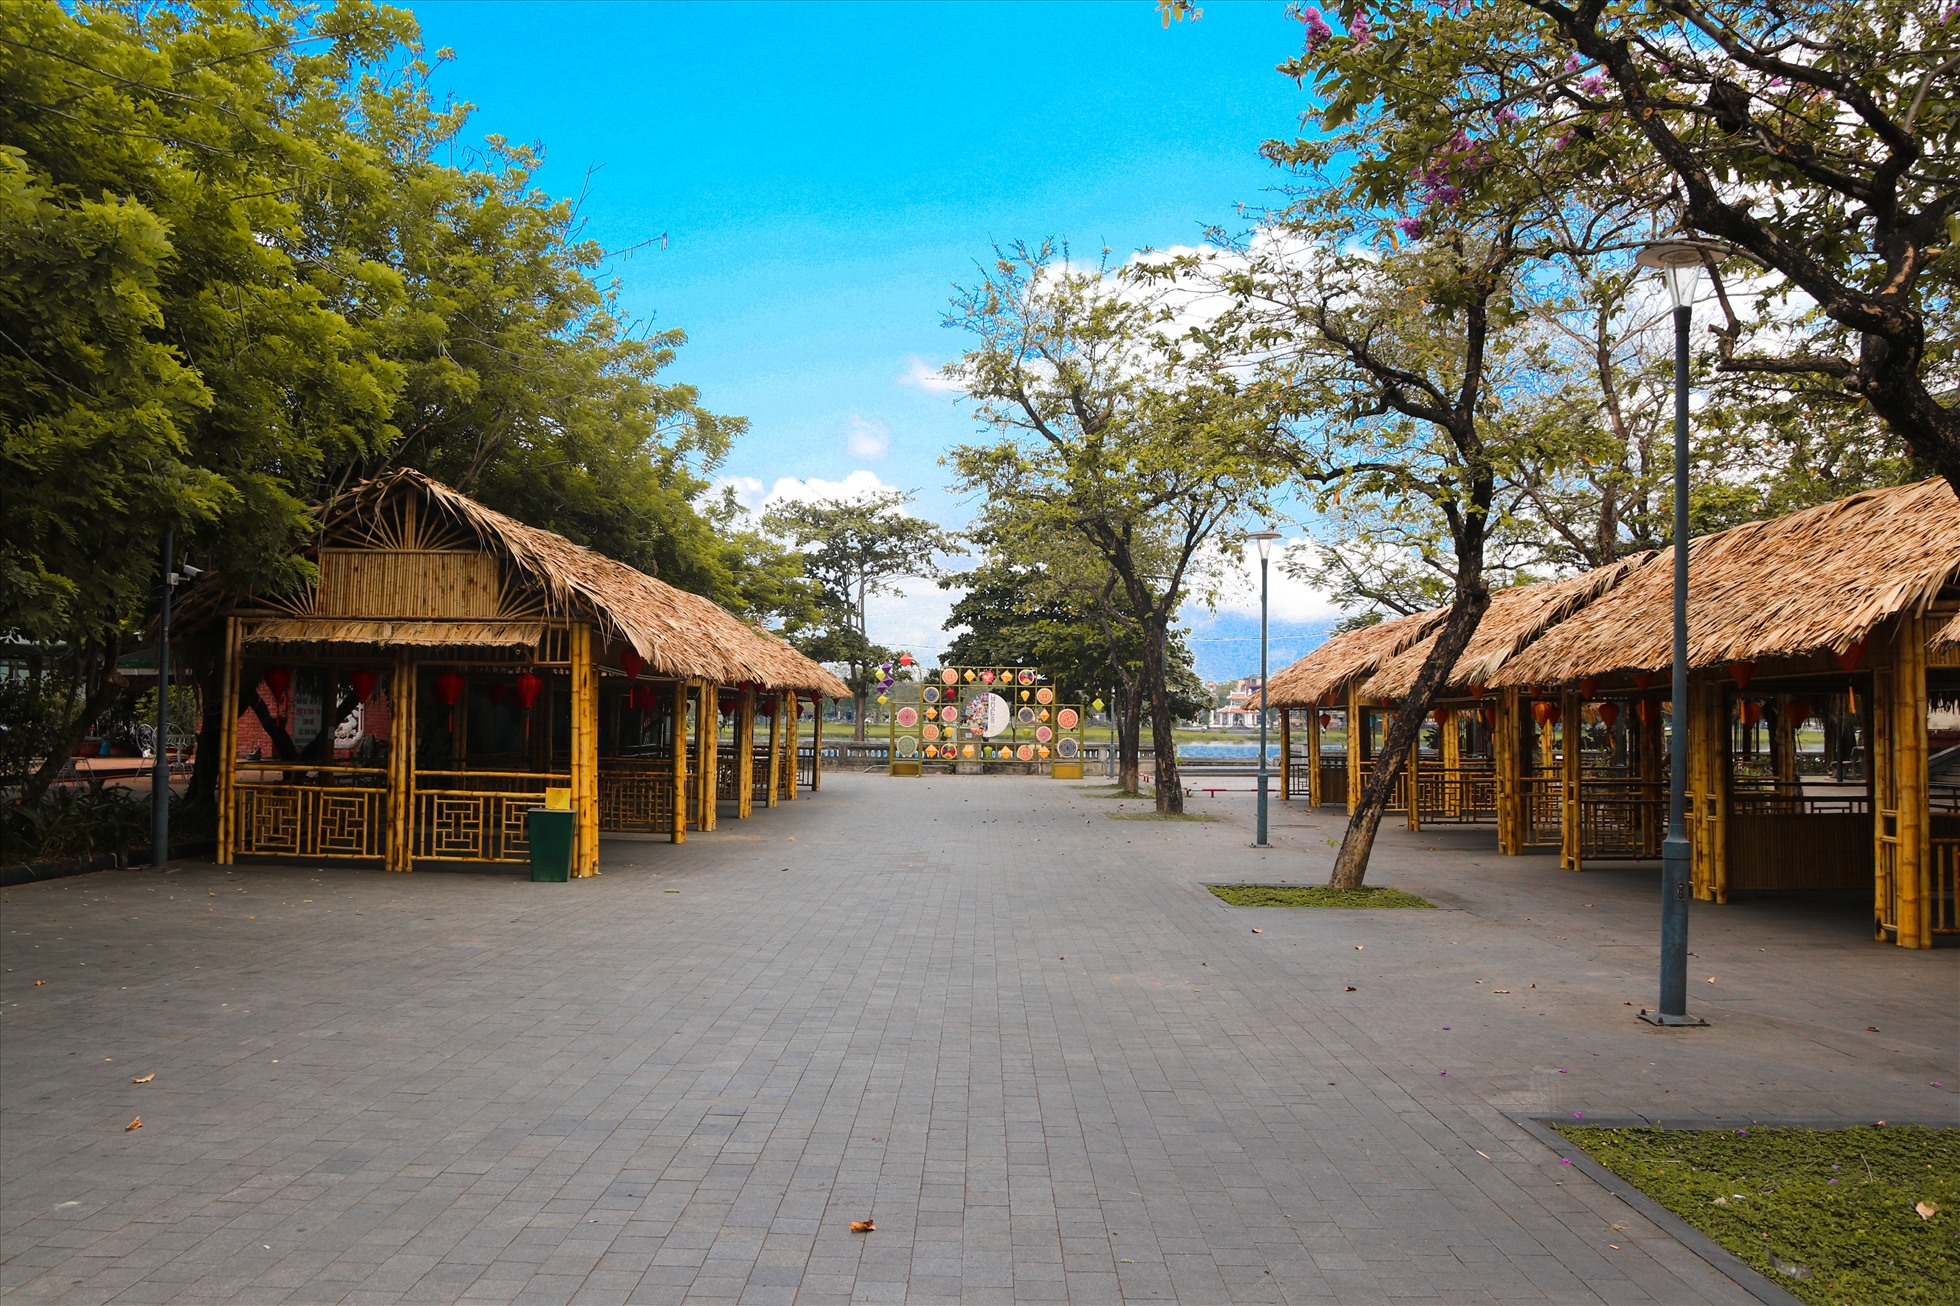 Ba địa điểm sẽ diễn ra nhiều chương trình, hoạt động của tuần lễ Festival NTT gồm đường đi bộ Nguyễn Đình Chiểu và các không gian xung quanh; Sân bia Quốc học (nơi diễn ra Lễ khai mạc) và Công viên Thương Bạc cùng một số địa điểm nổi tiếng khác của Huế.